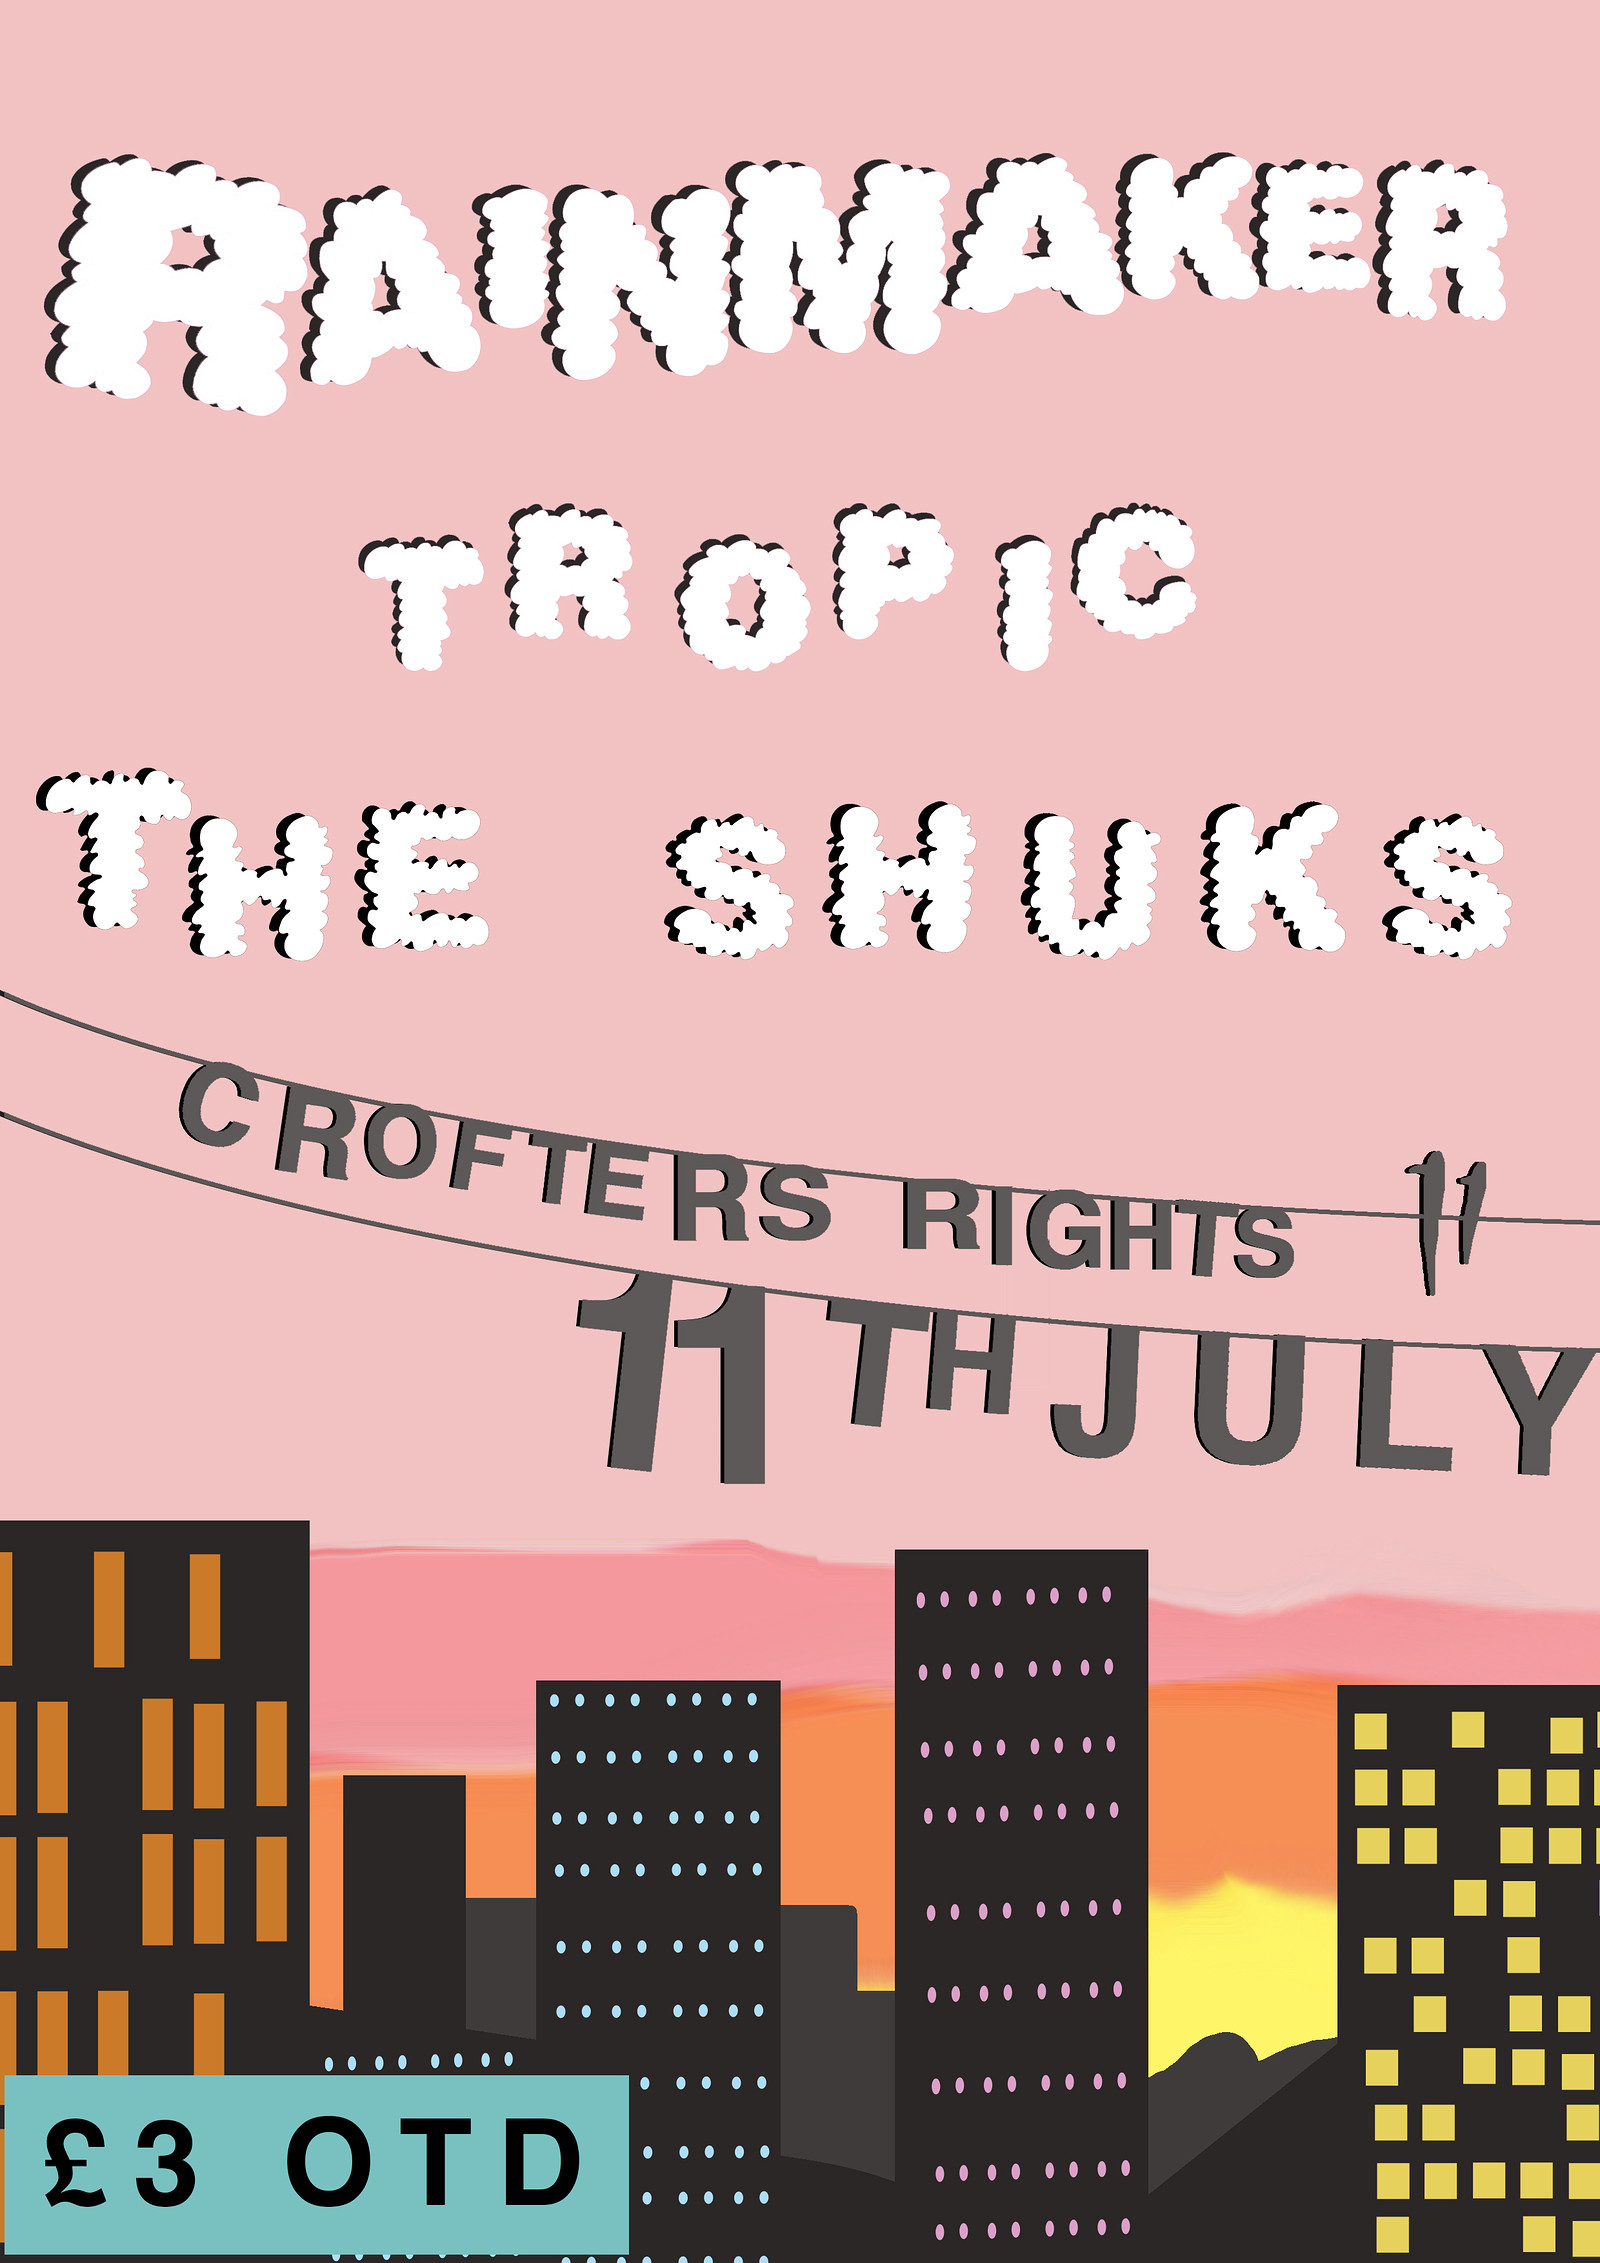 Rainmaker // Tropic // The Shuks @ Crofters Rights at Crofters Rights